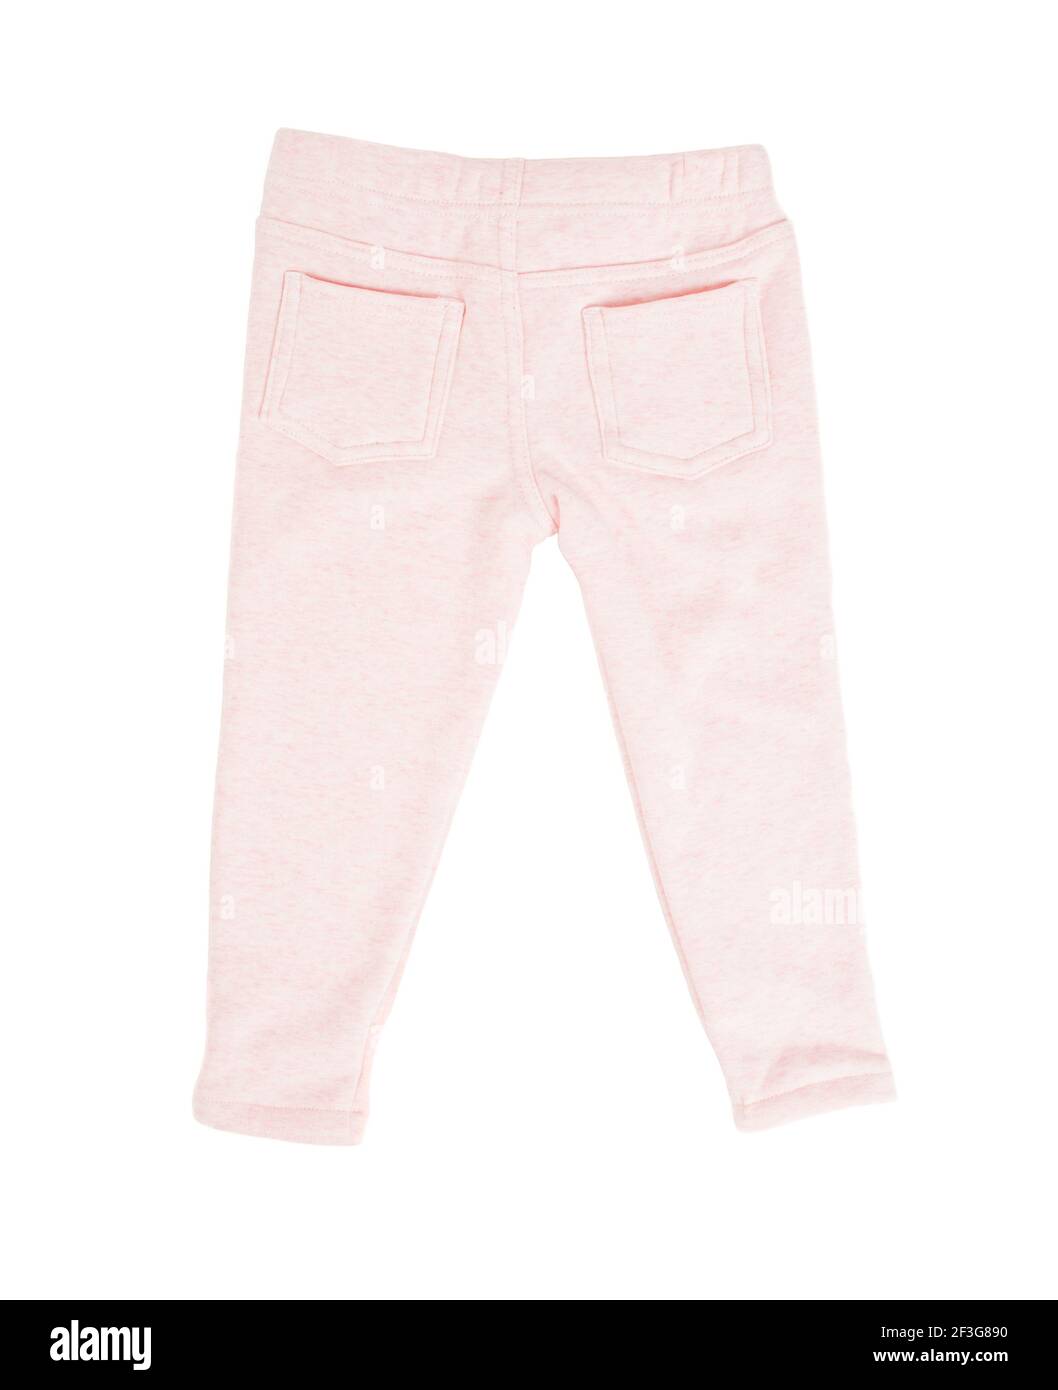 Pantaloni sportivi in cotone rosa per bambini. Isolato su sfondo bianco. Foto Stock